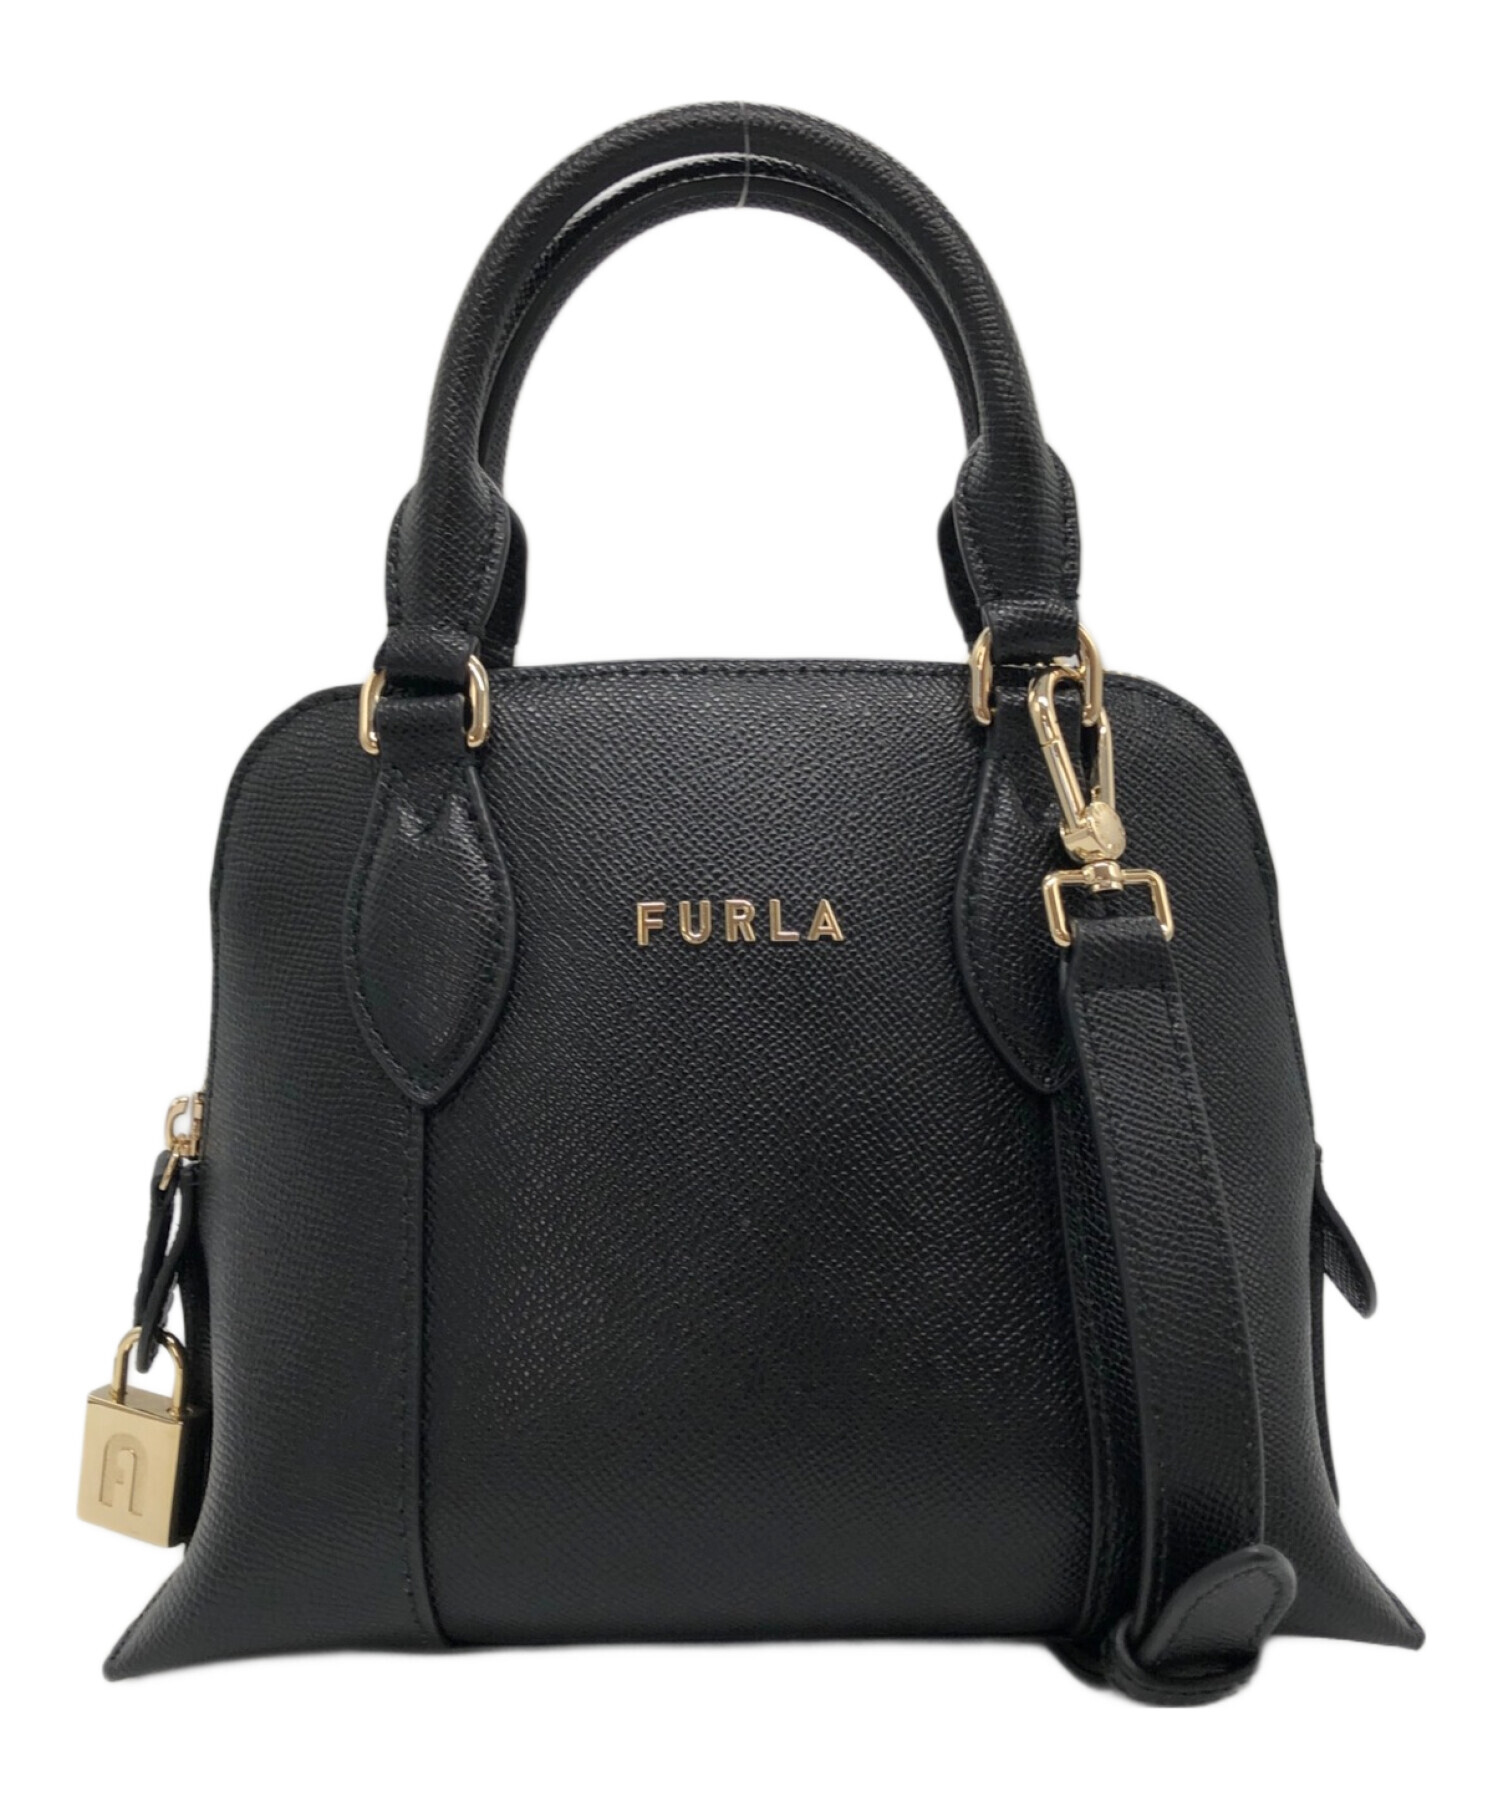 限定製作専用FURLA 2way ショルダーバック ハンドバック グレー 正規品 バッグ